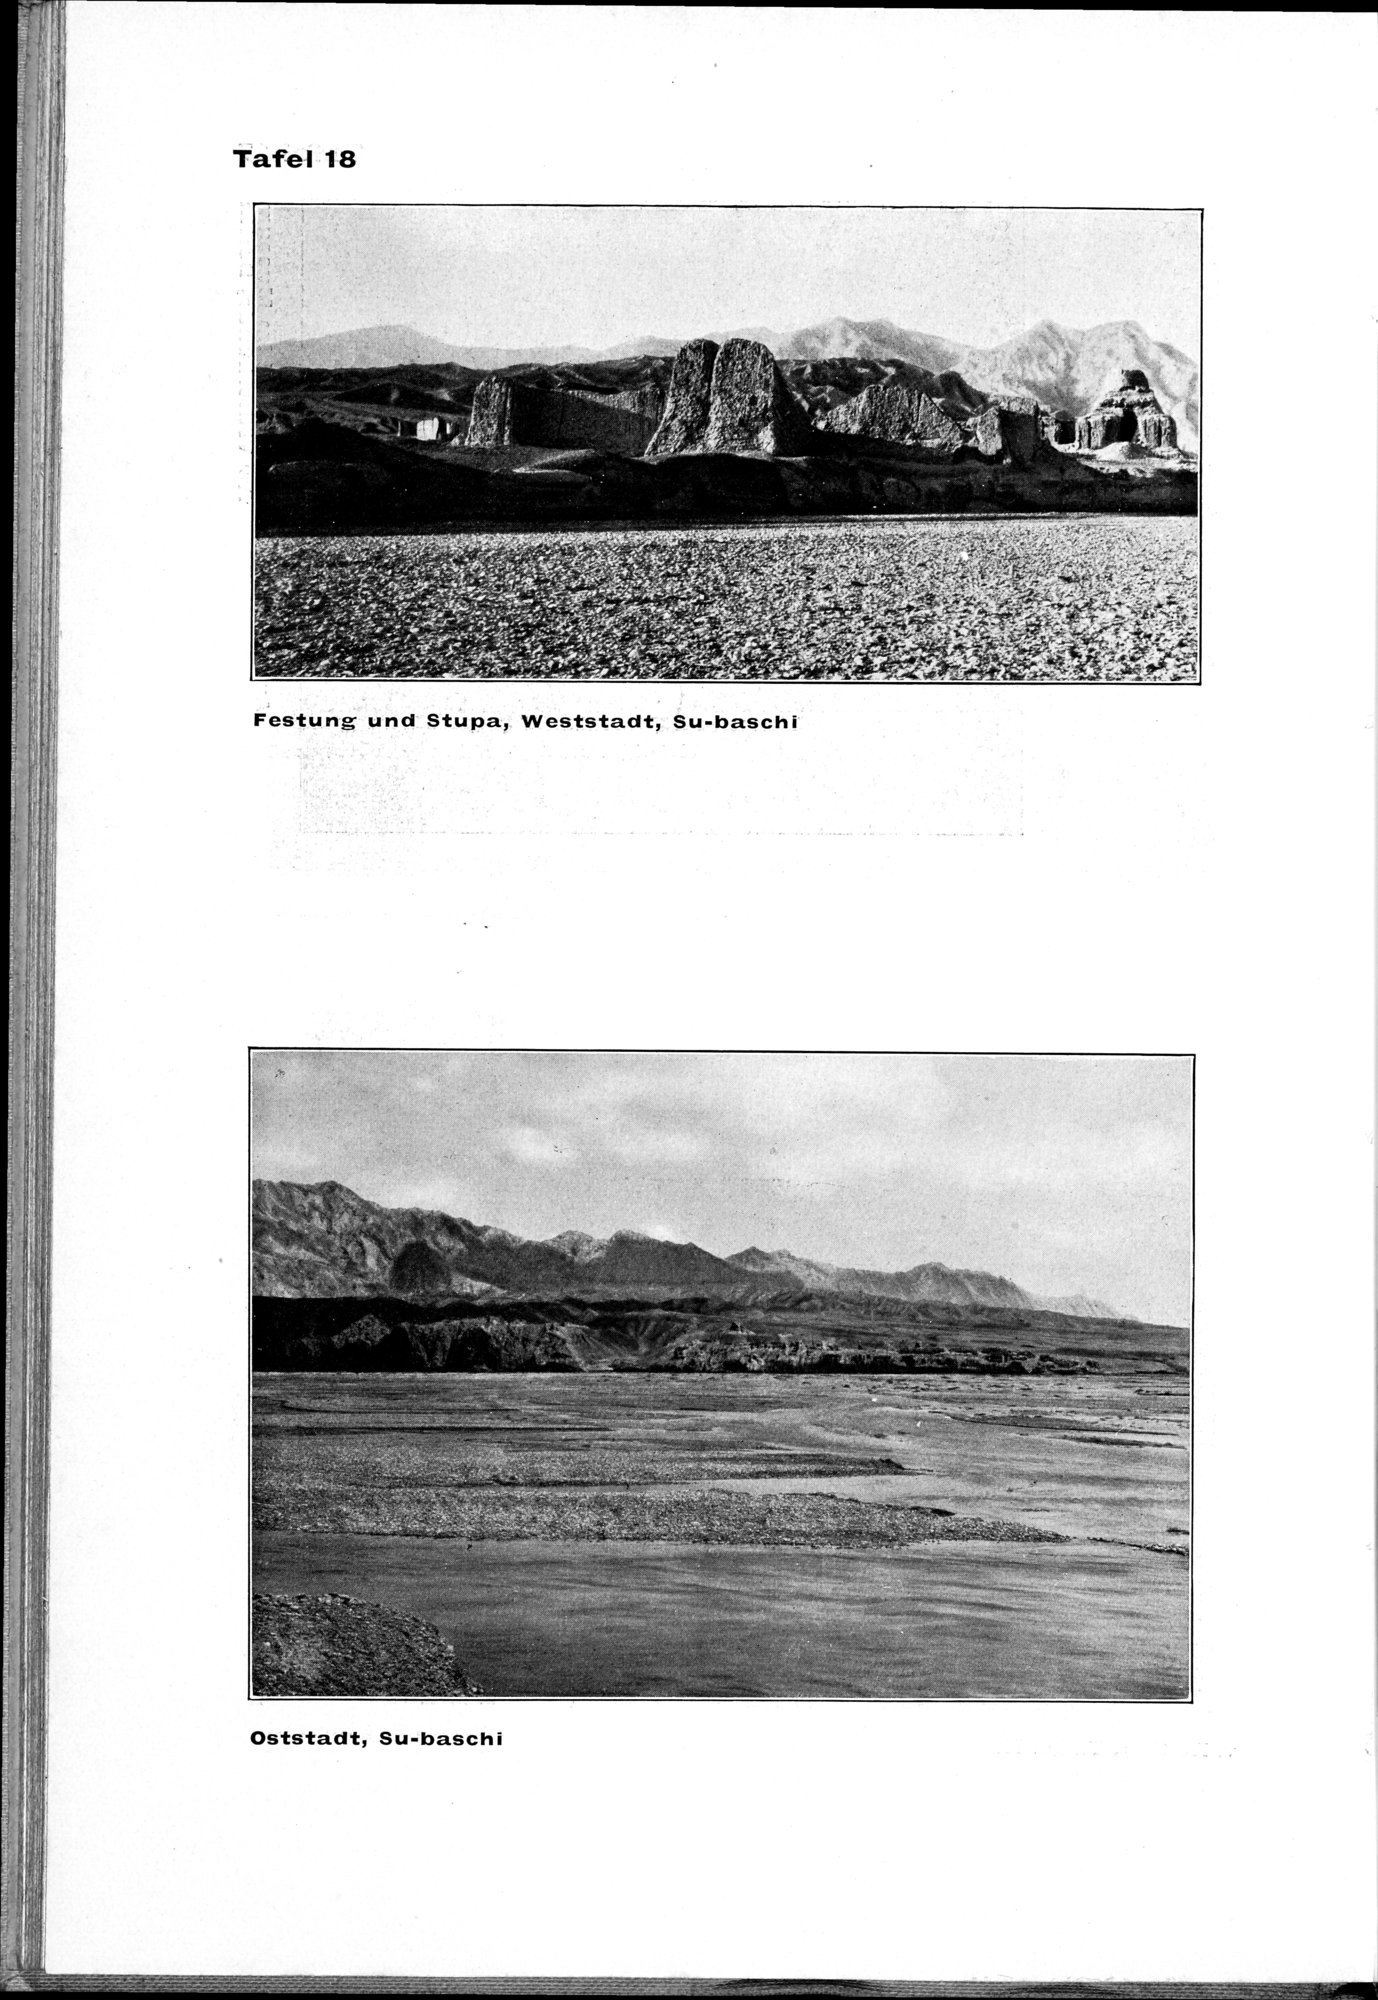 Von Land und Leuten in Ostturkistan : vol.1 / Page 102 (Grayscale High Resolution Image)